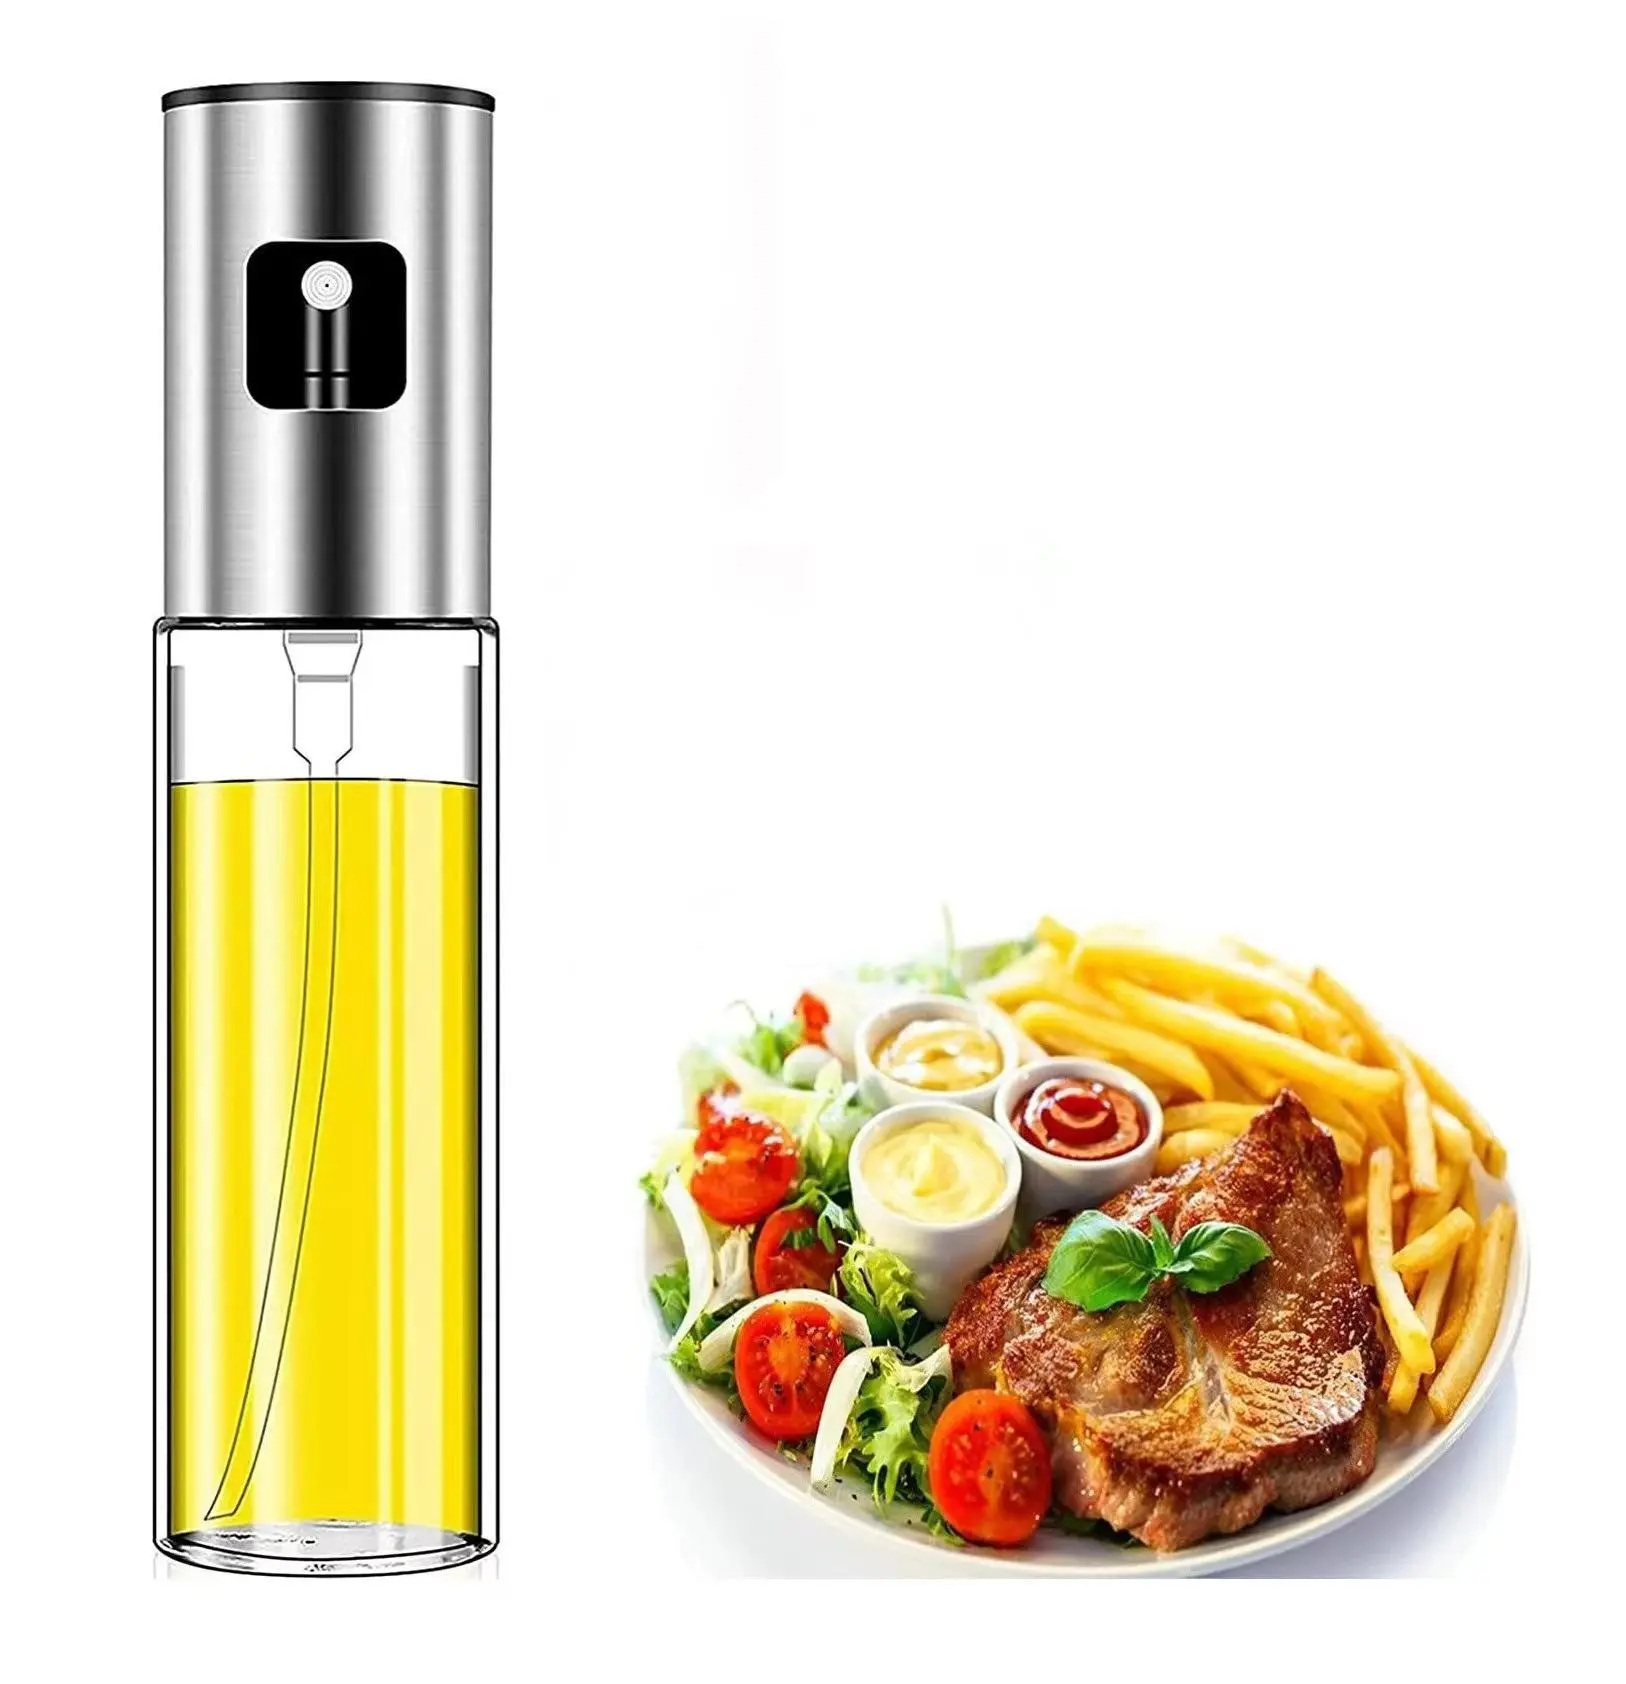 3,4 Unzen Glas-Olivenöl flasche in Lebensmittel qualität 100ml Öl sprüh öl Sprüh spender flasche zum Grillen Backen Kochen